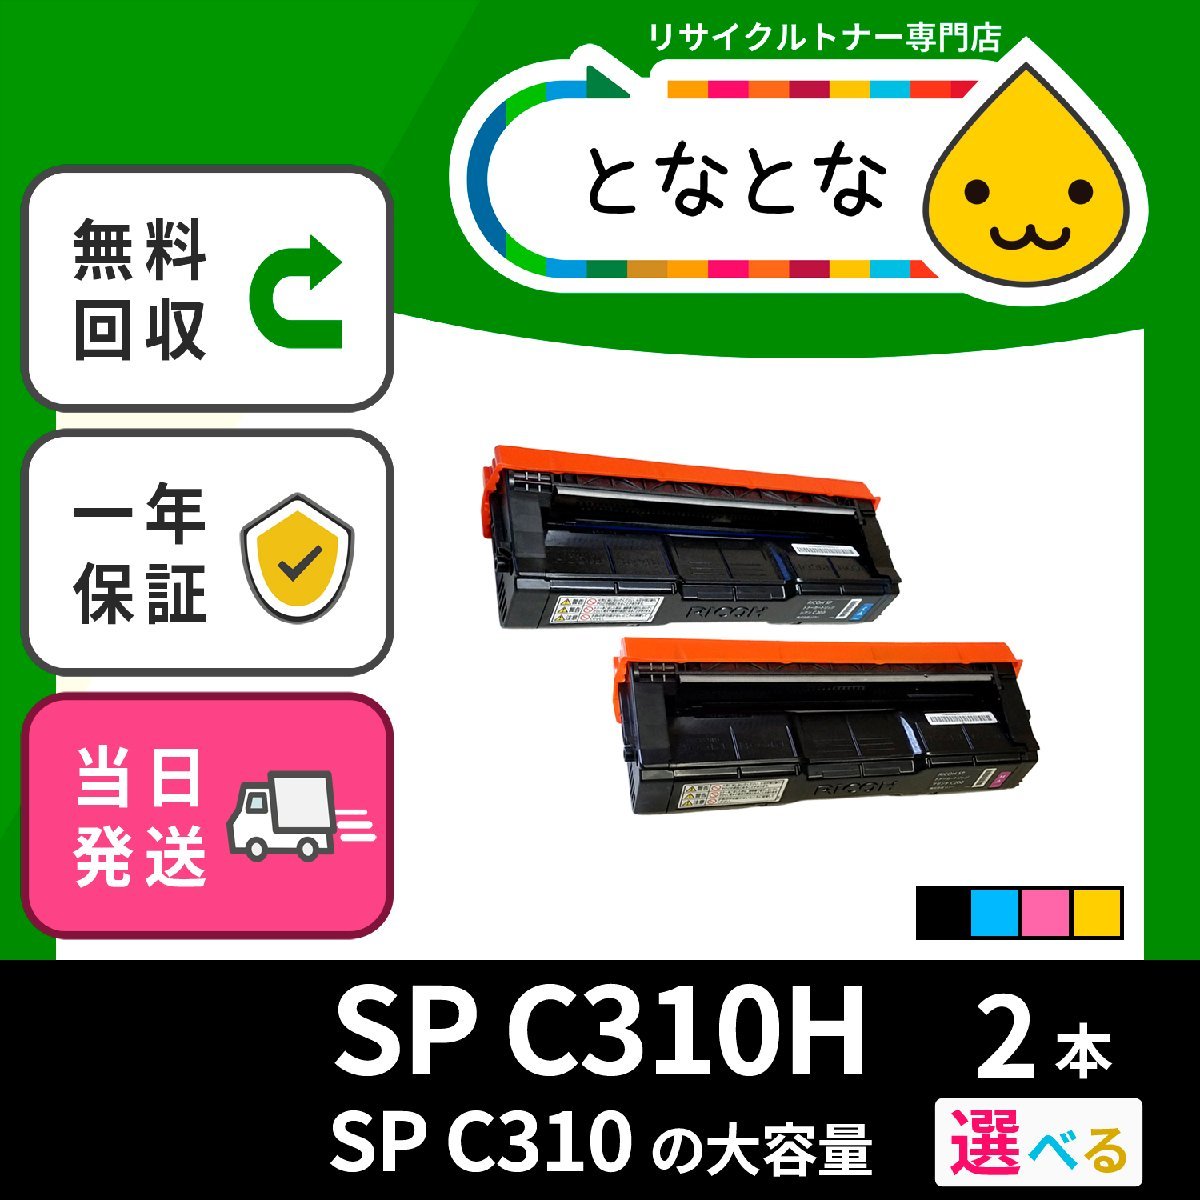 品多く SP 純正品IPSiO RICOH 送料無料 トナー C830用) SP C831/IPSiO